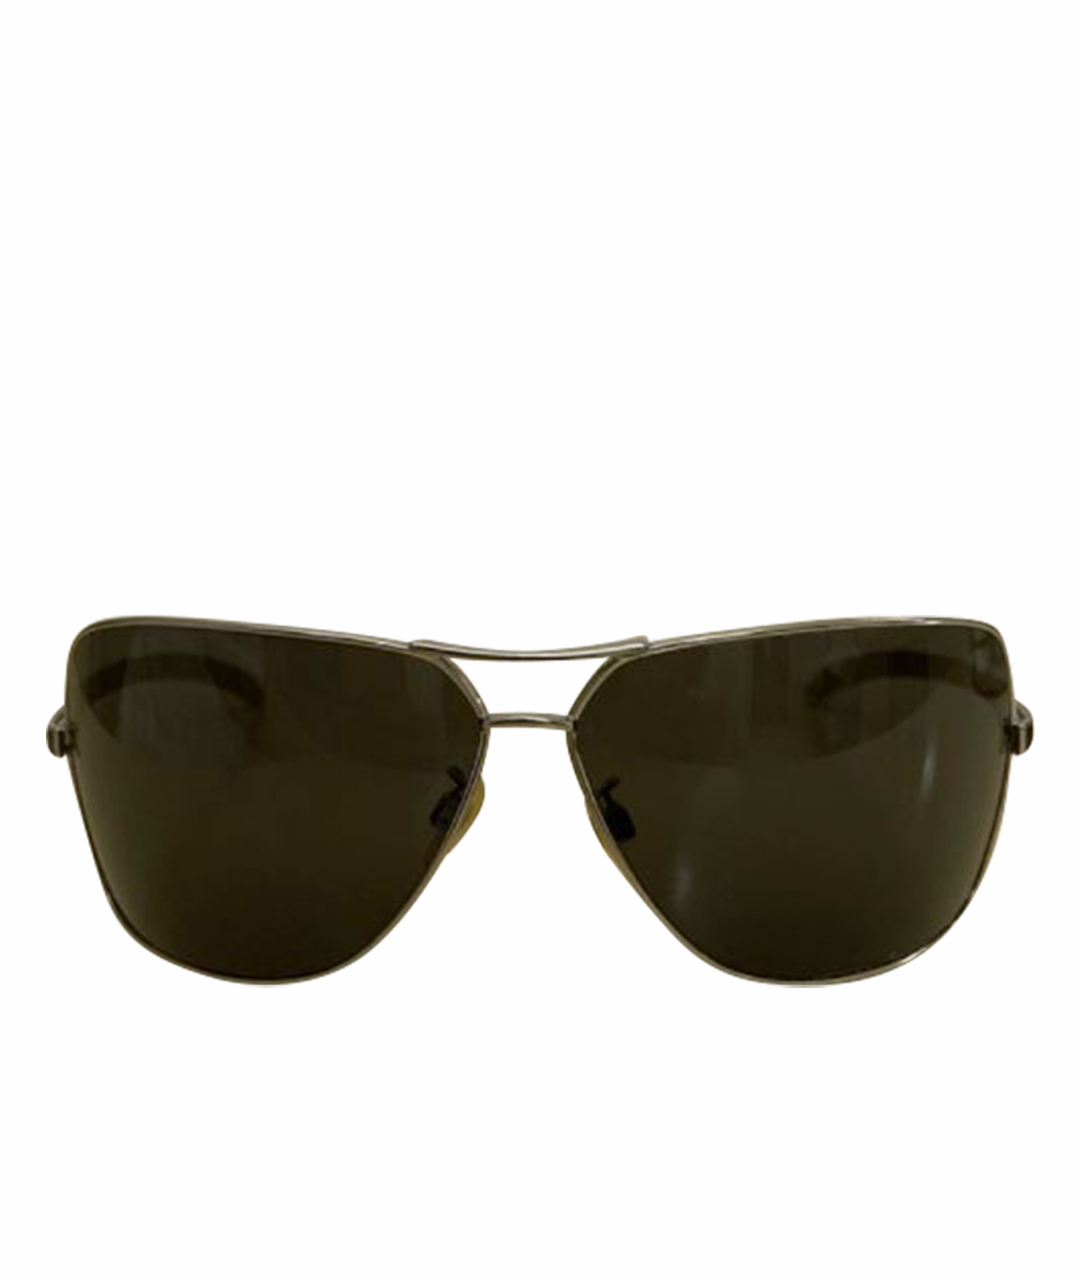 CHANEL PRE-OWNED Черные металлические солнцезащитные очки, фото 1